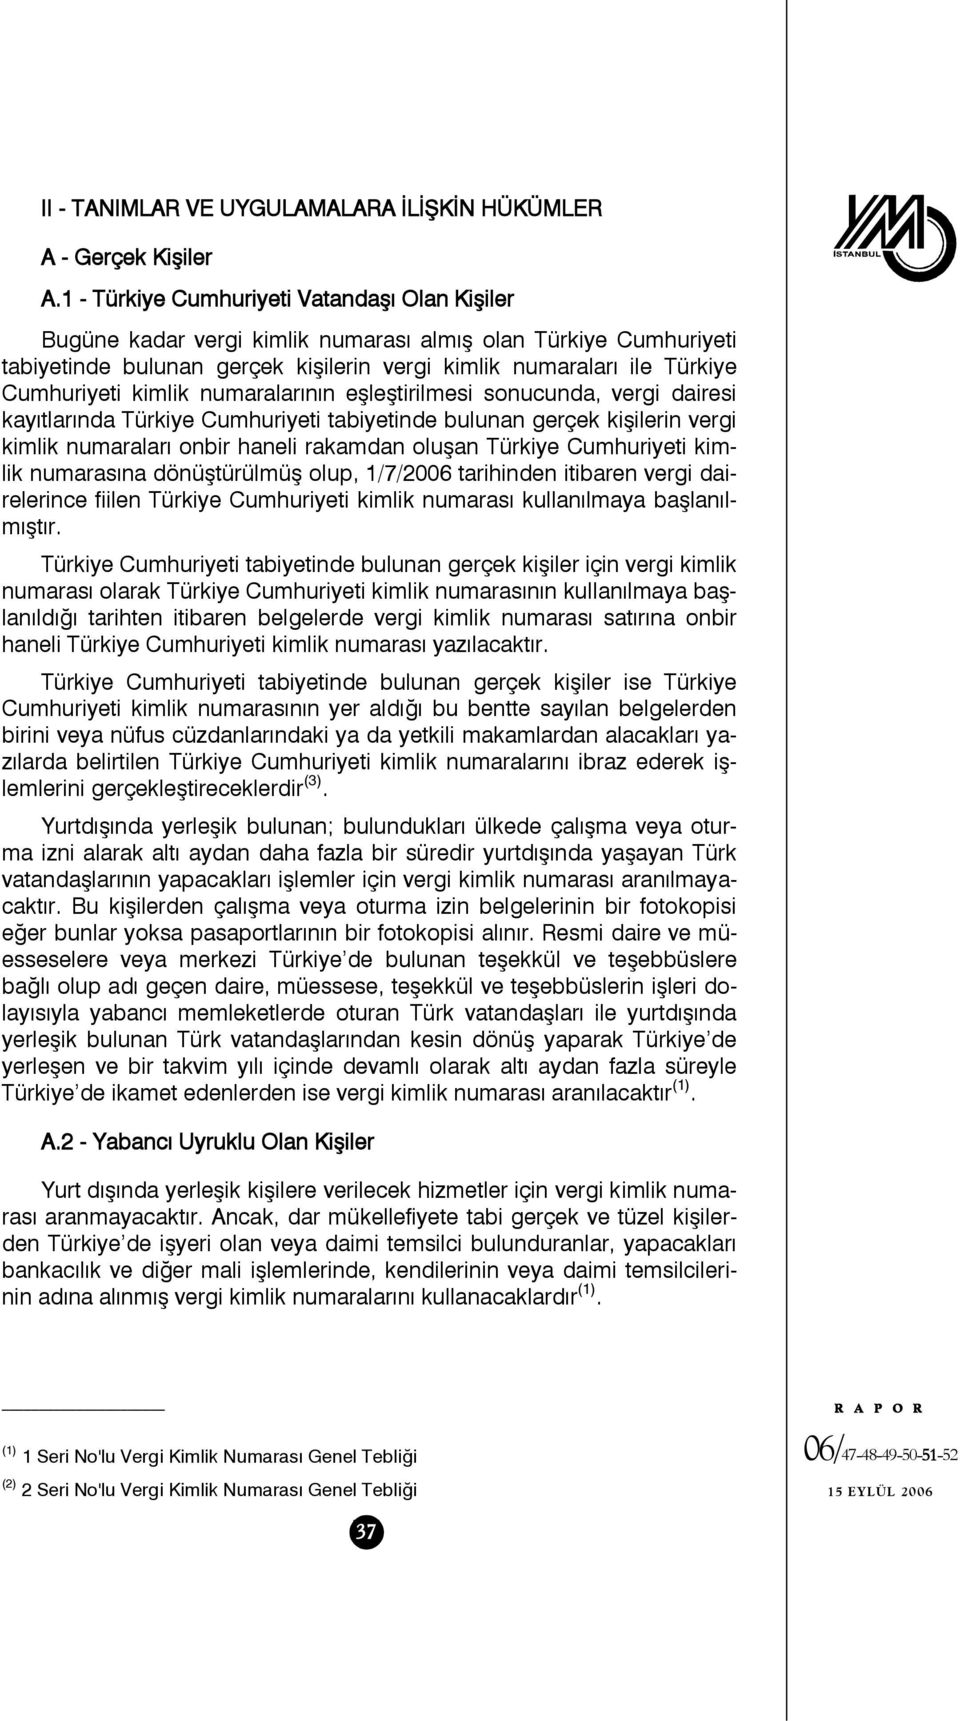 kimlik numaralarının eşleştirilmesi sonucunda, vergi dairesi kayıtlarında Türkiye Cumhuriyeti tabiyetinde bulunan gerçek kişilerin vergi kimlik numaraları onbir haneli rakamdan oluşan Türkiye